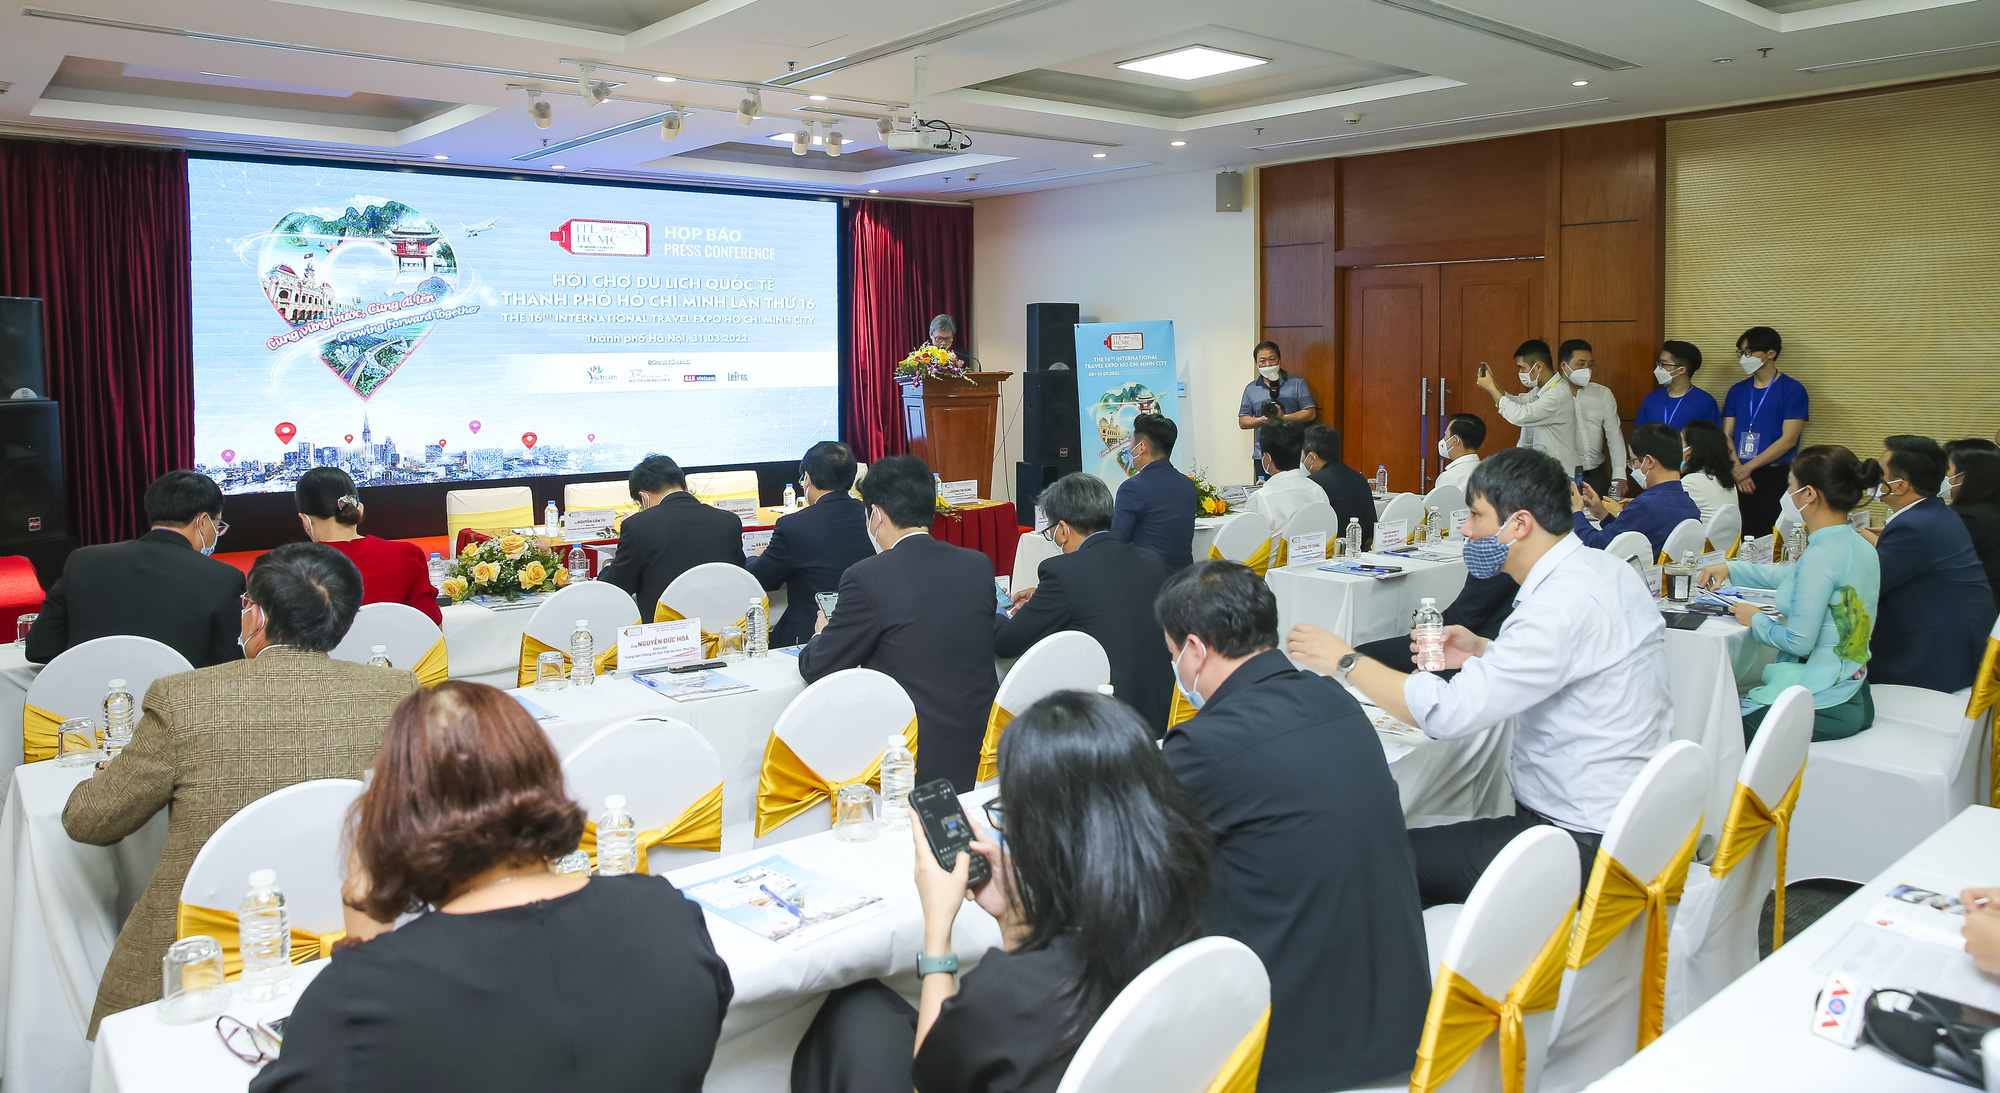 Hội chợ Du lịch Quốc tế Thành phố Hồ Chí Minh sẽ chính thức trở lại với chủ đề “Cùng vững bước, cùng đi lên” - Ảnh 1.